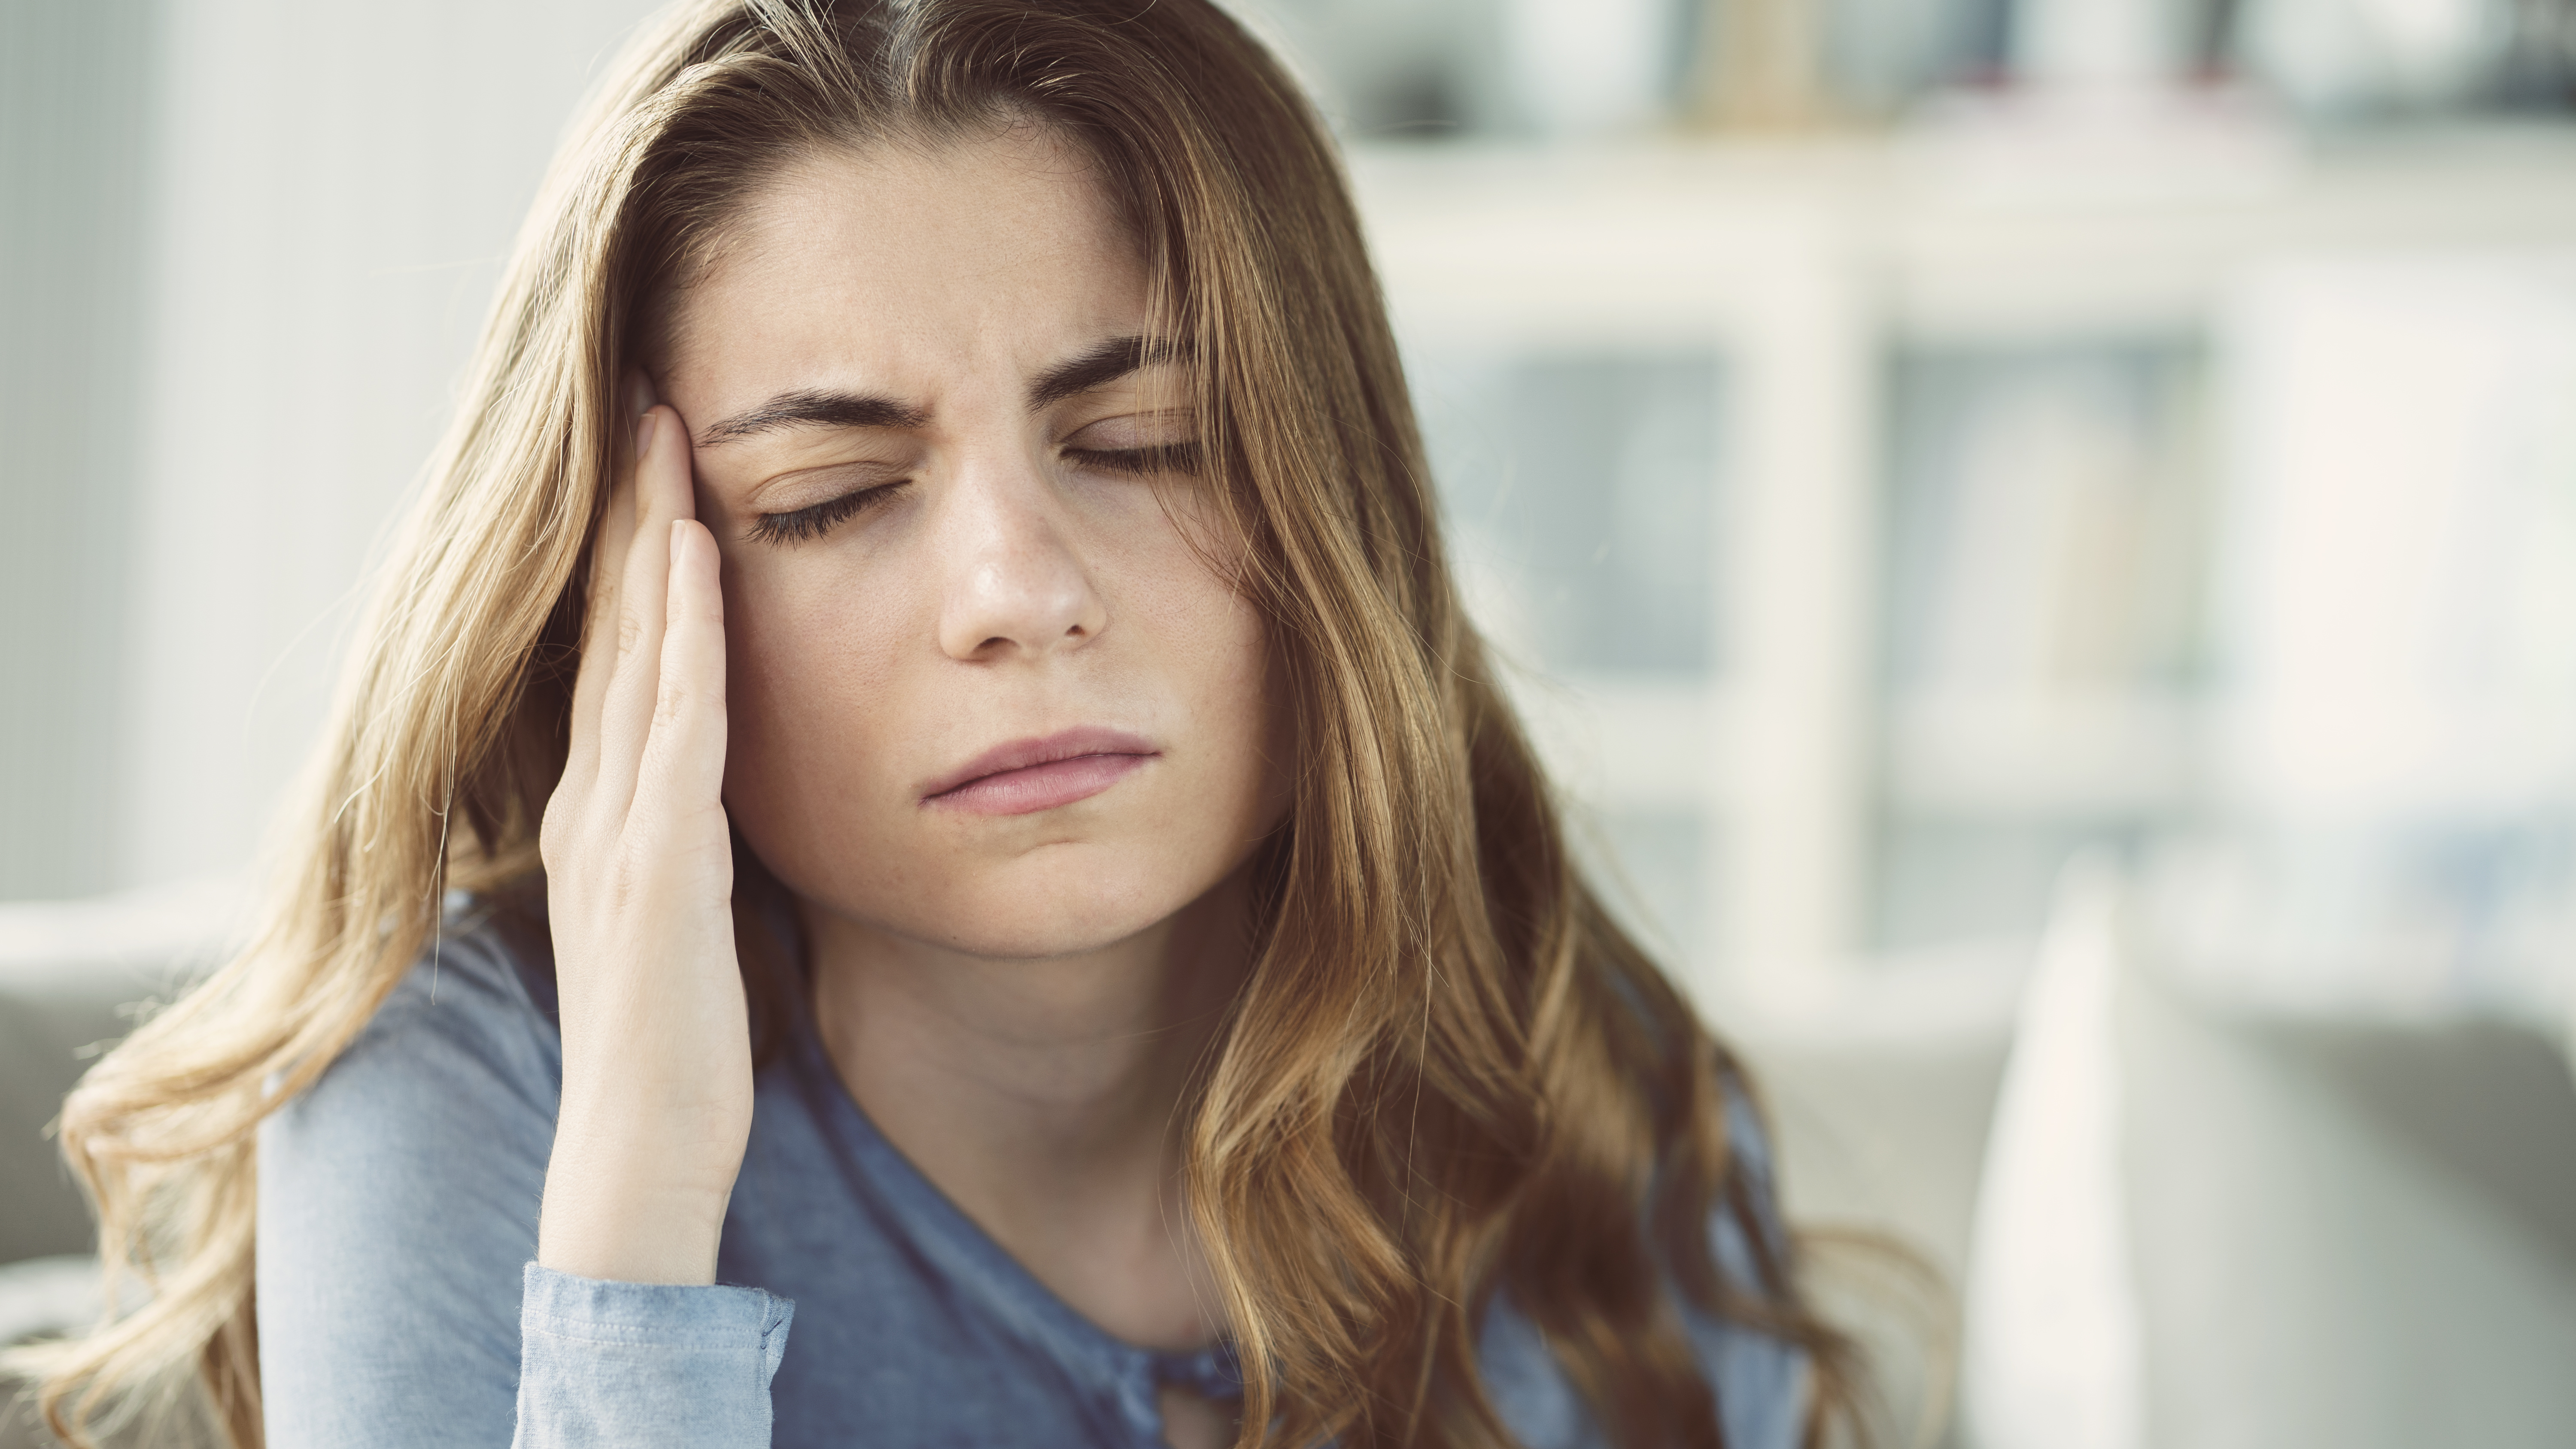 La migraine chronique est favorisée par un faible niveau de revenus, la dépression ou la prise excessive de médicaments. © sebra, Adobe Stock